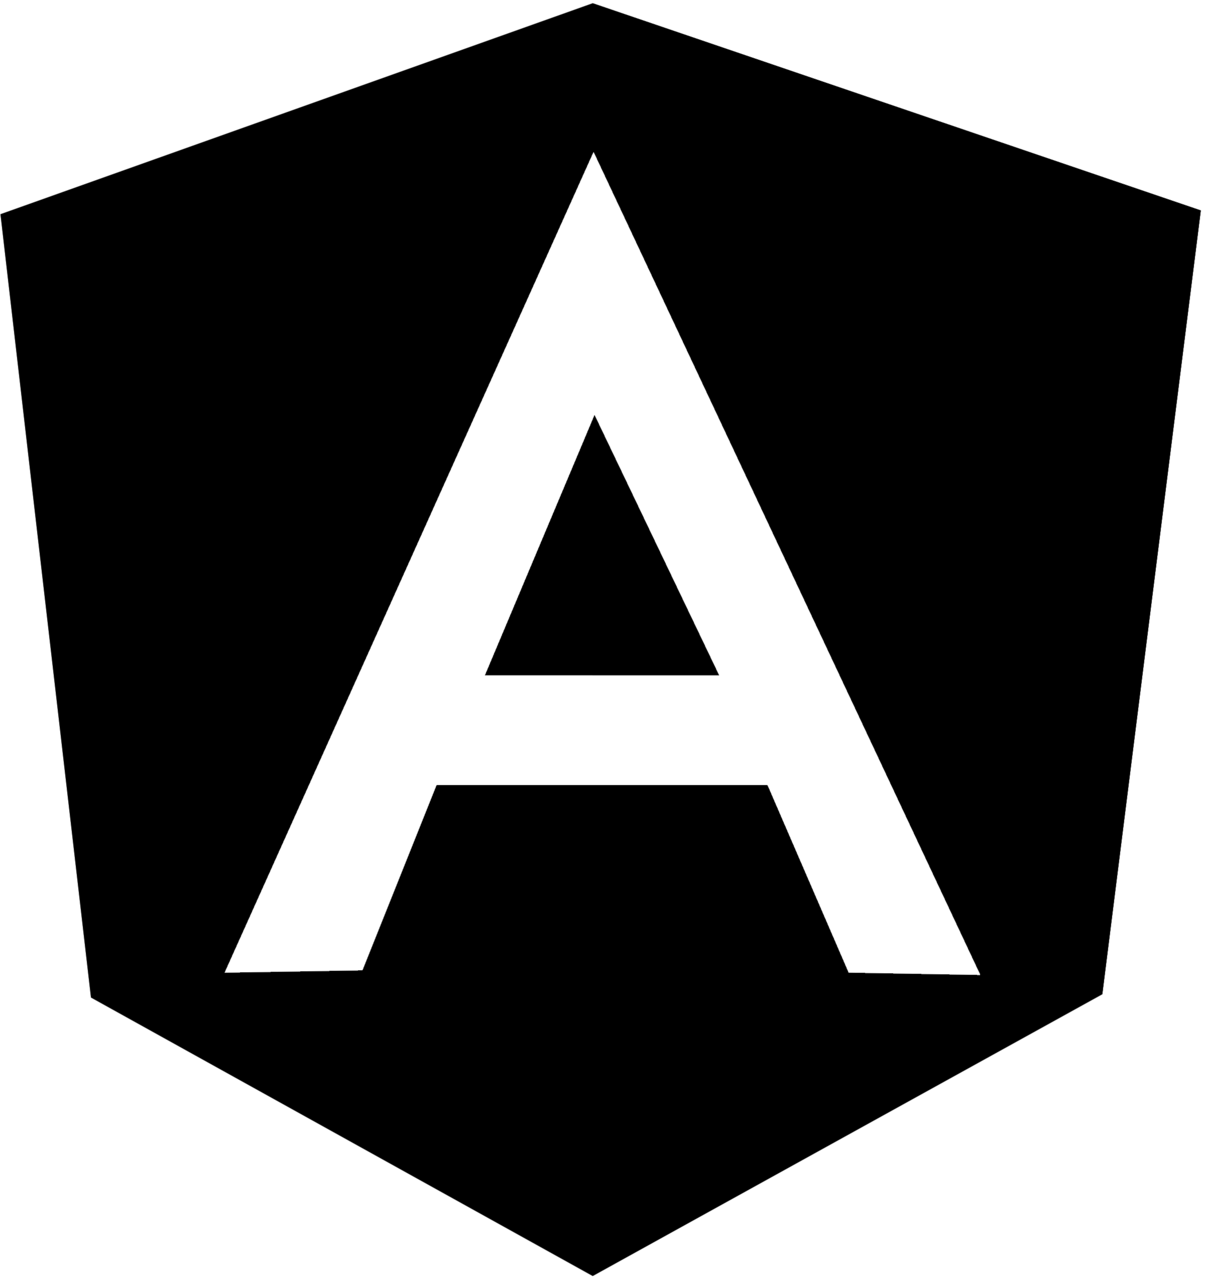 angular-logo-black-and-white